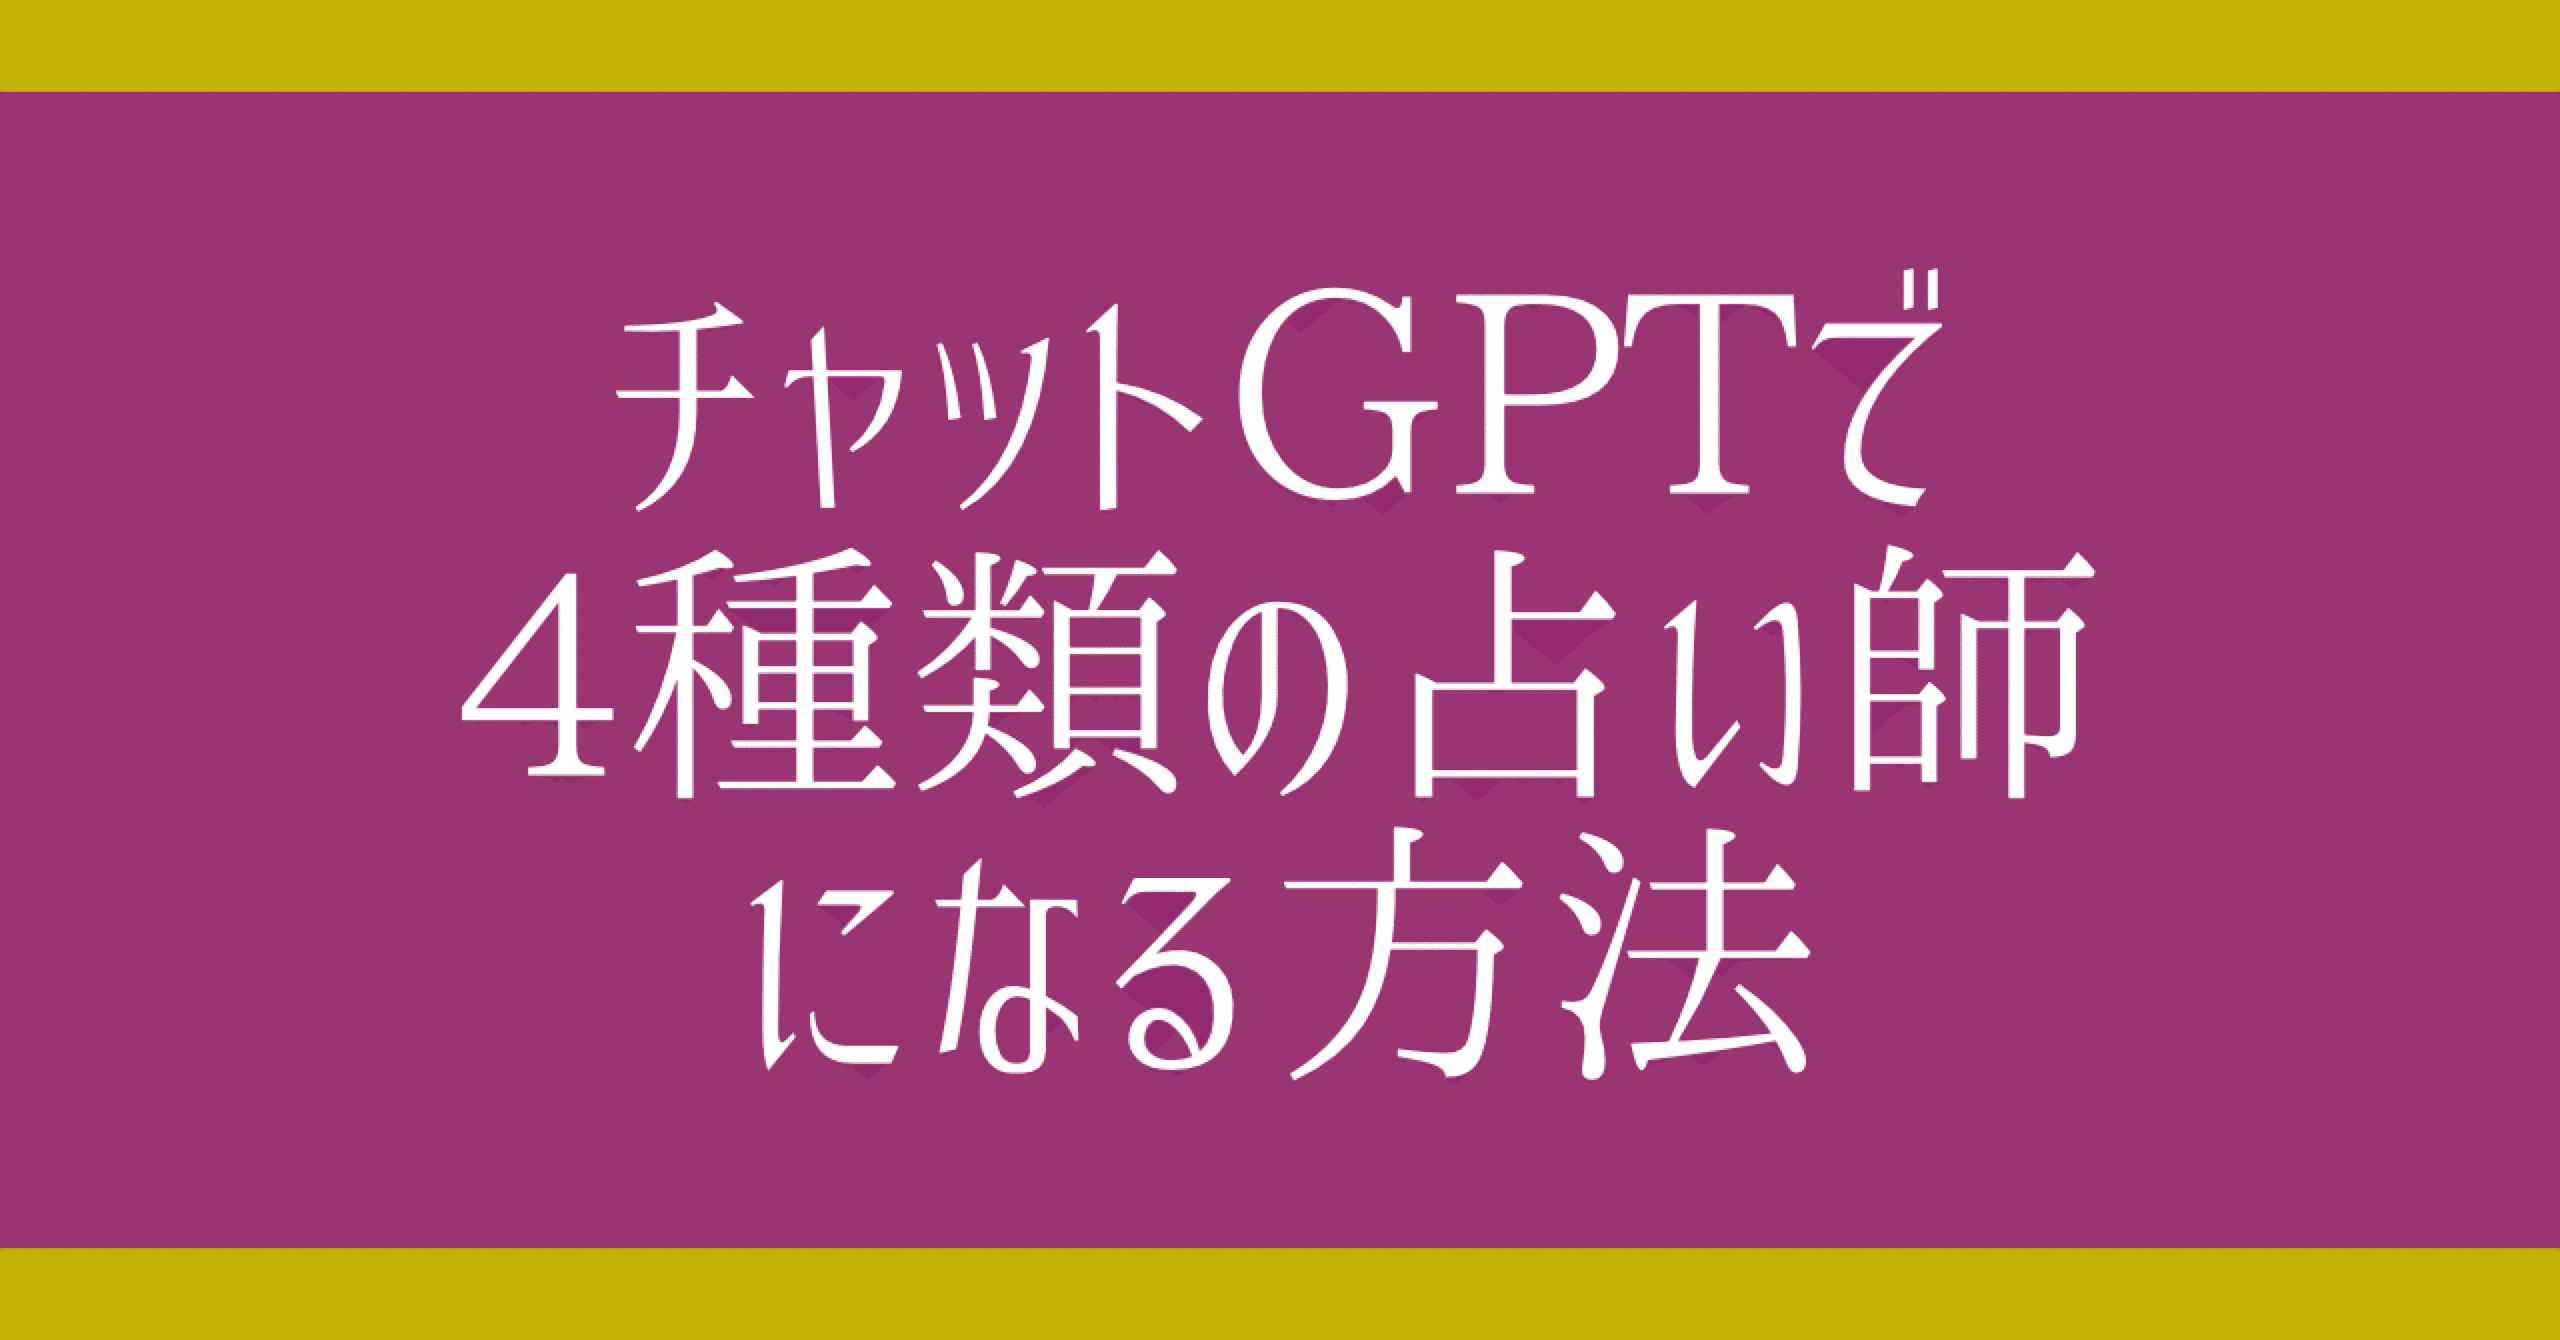 チャットGPTを活用して4種類の占い師になる方法【ChatGPT